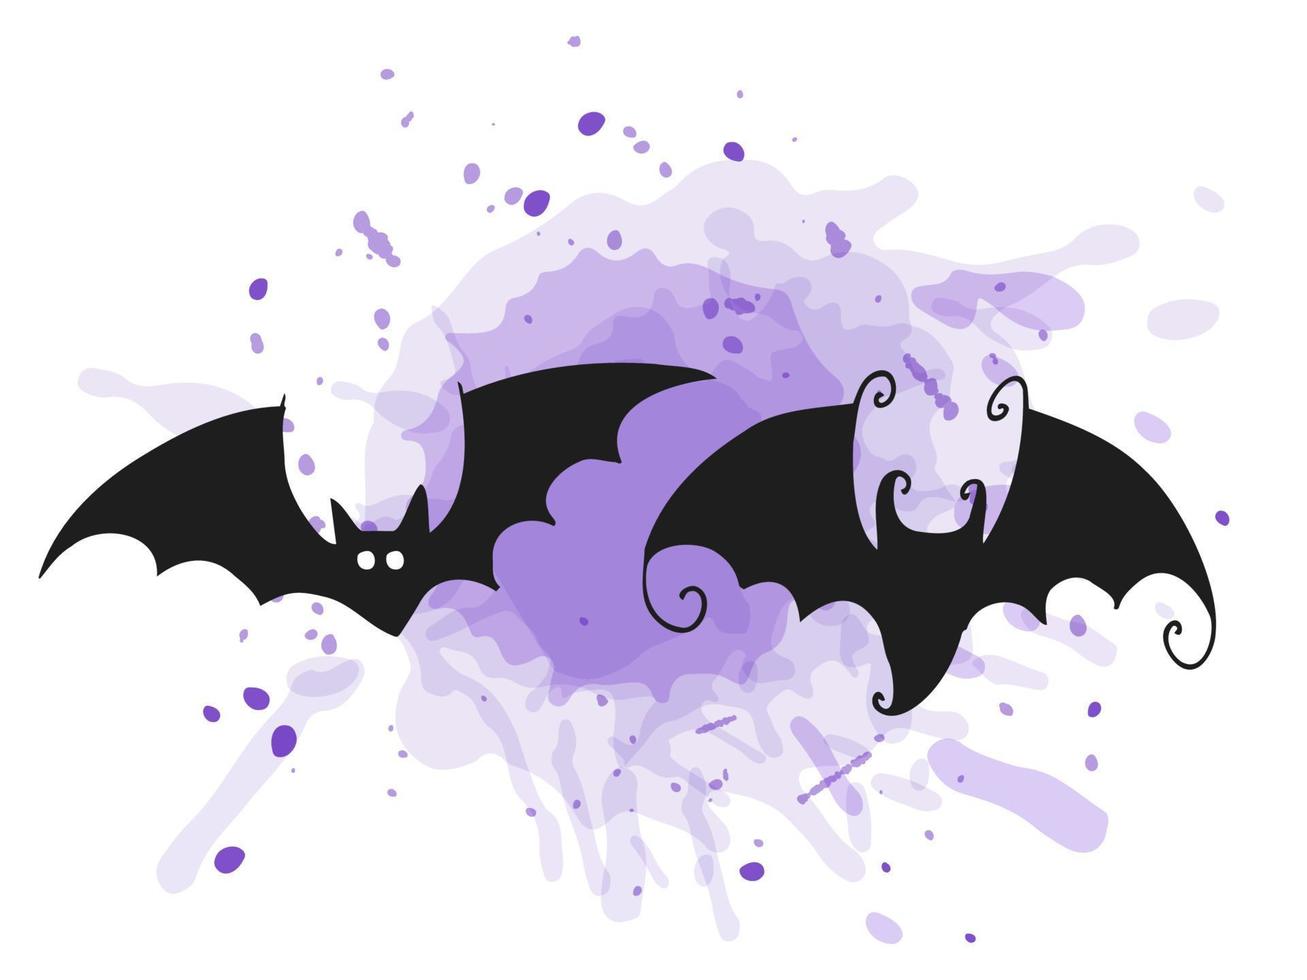 halloween 2022 - 31 de octubre. una fiesta tradicional. truco o trato. ilustración vectorial en estilo garabato dibujado a mano. conjunto de siluetas de murciélagos con una mancha de color púrpura. vector